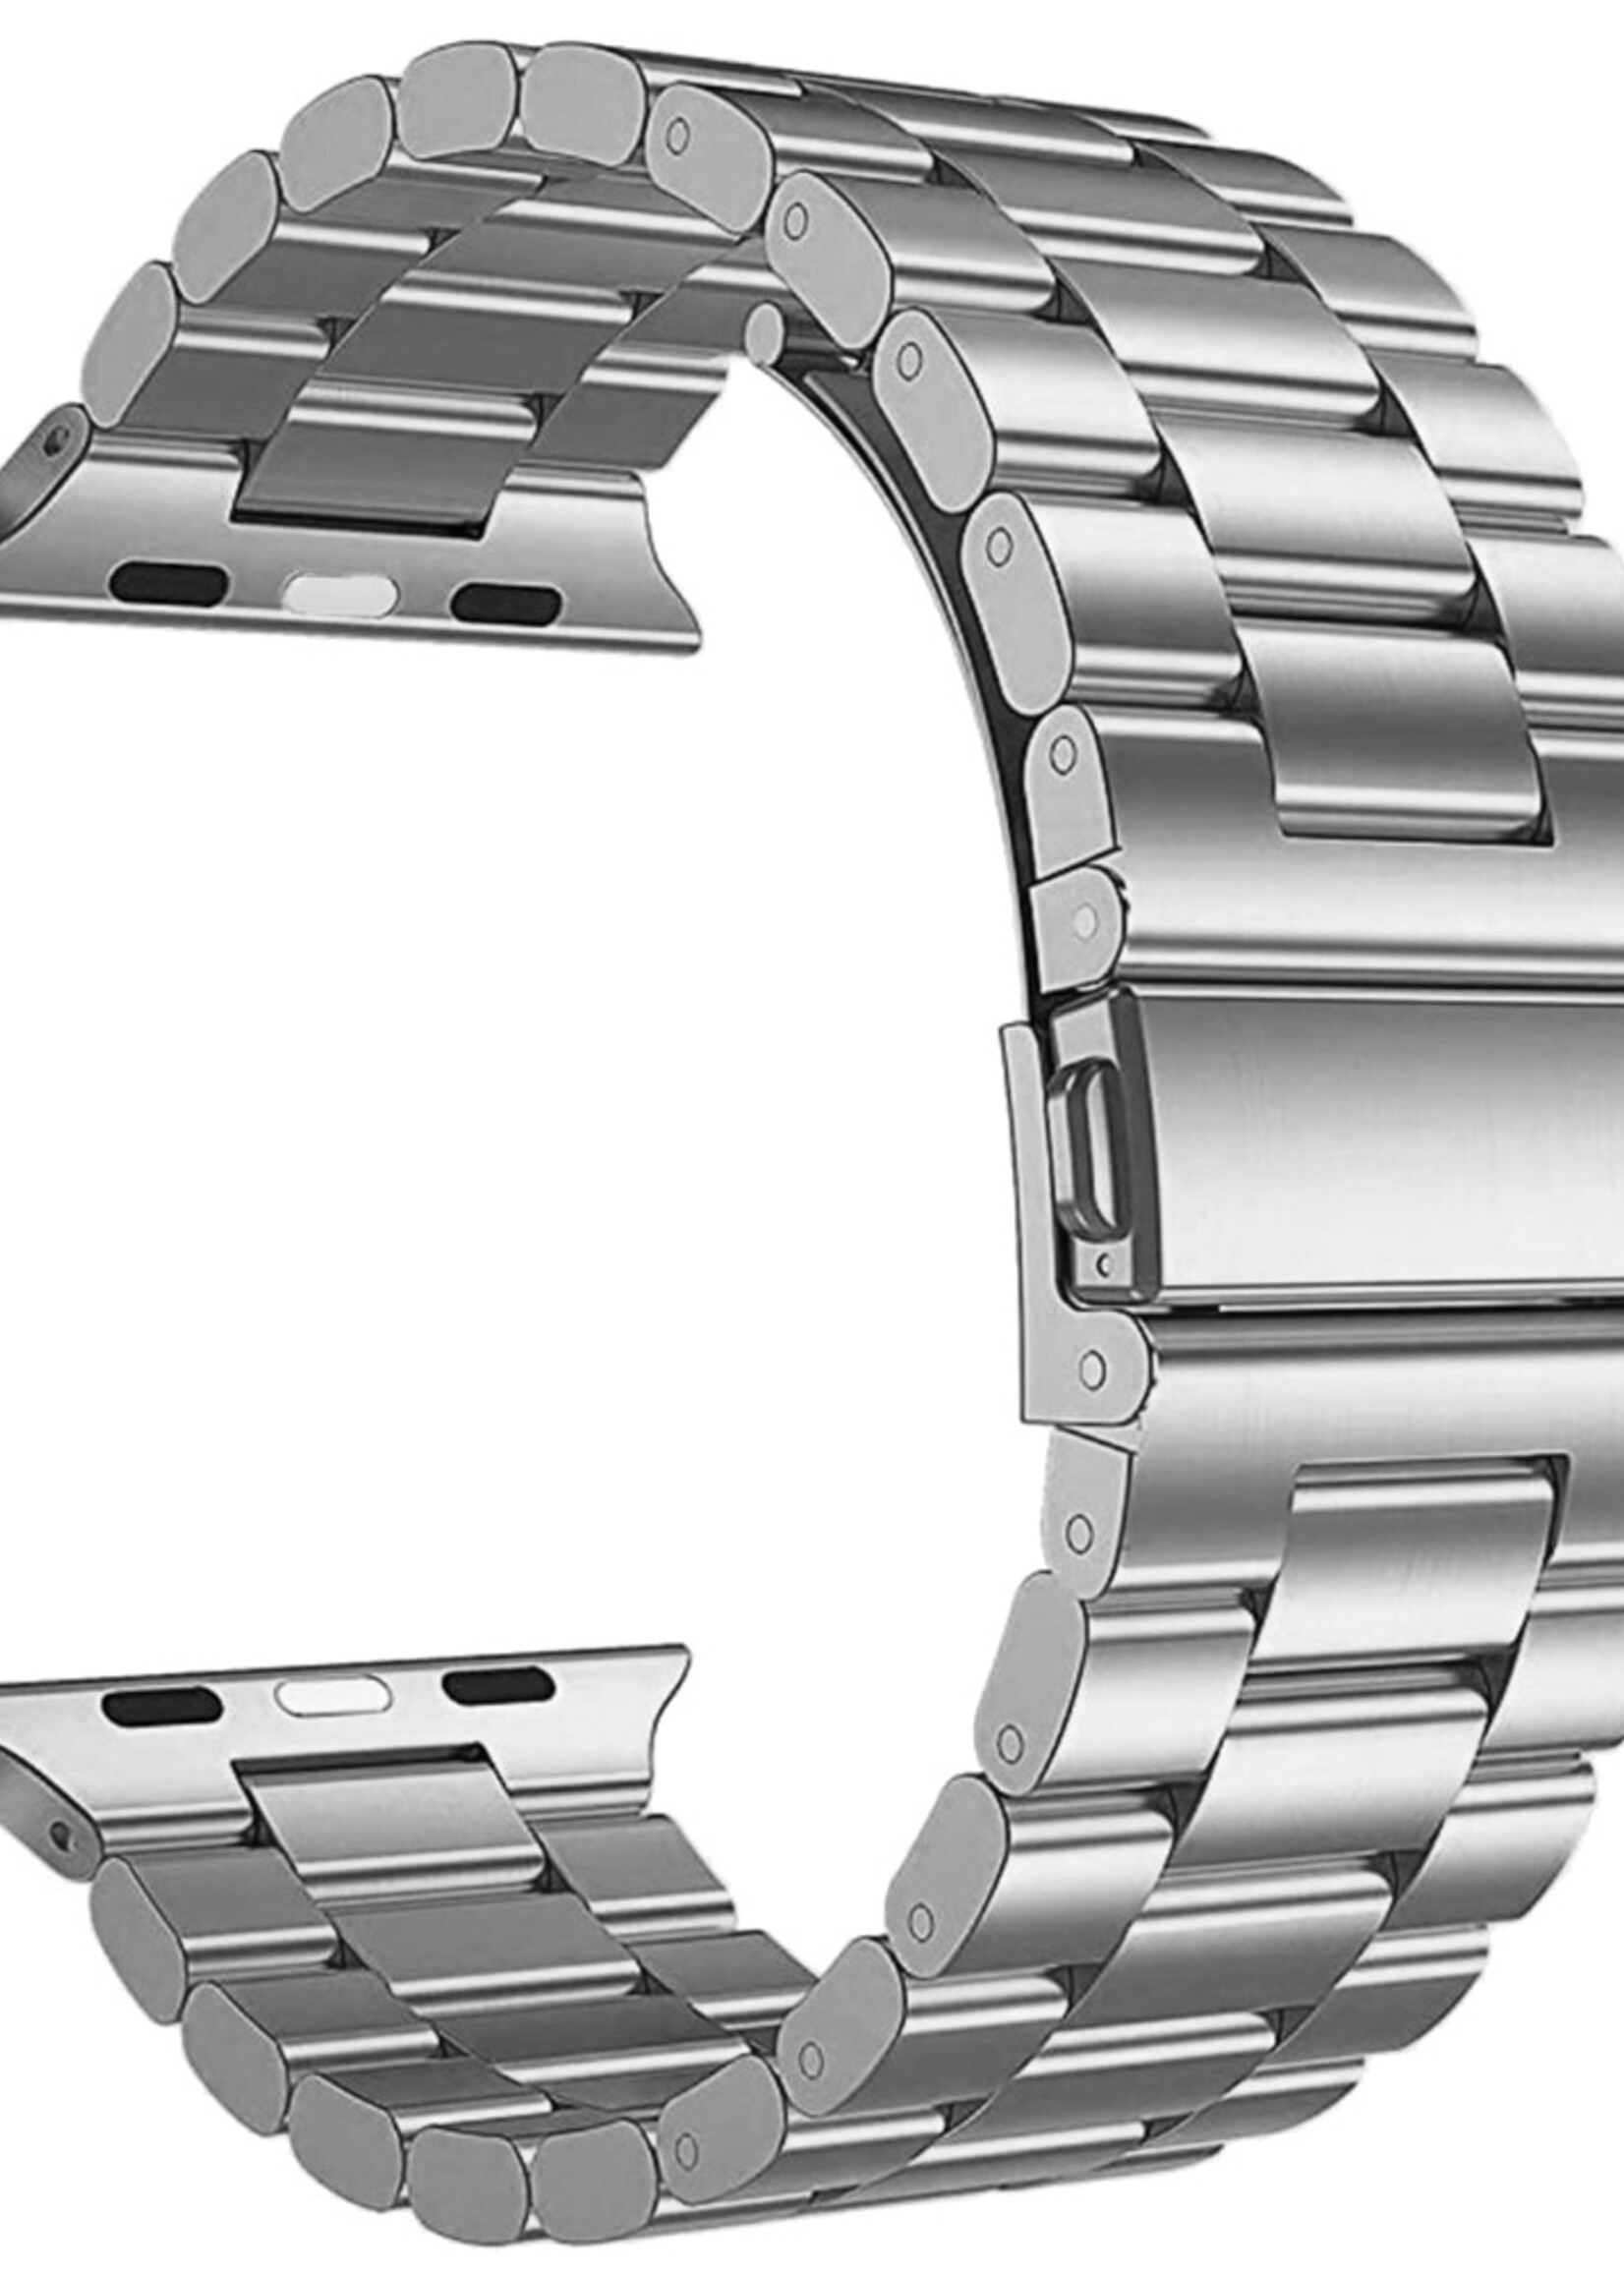 BTH Bandje Geschikt Voor Apple Watch Bandje 42/44/45 mm Metalen Schakel Polsband - Horloge Bandje Geschikt Voor Apple Watch 1-8 / SE - 42/44/45 mm - Zilver